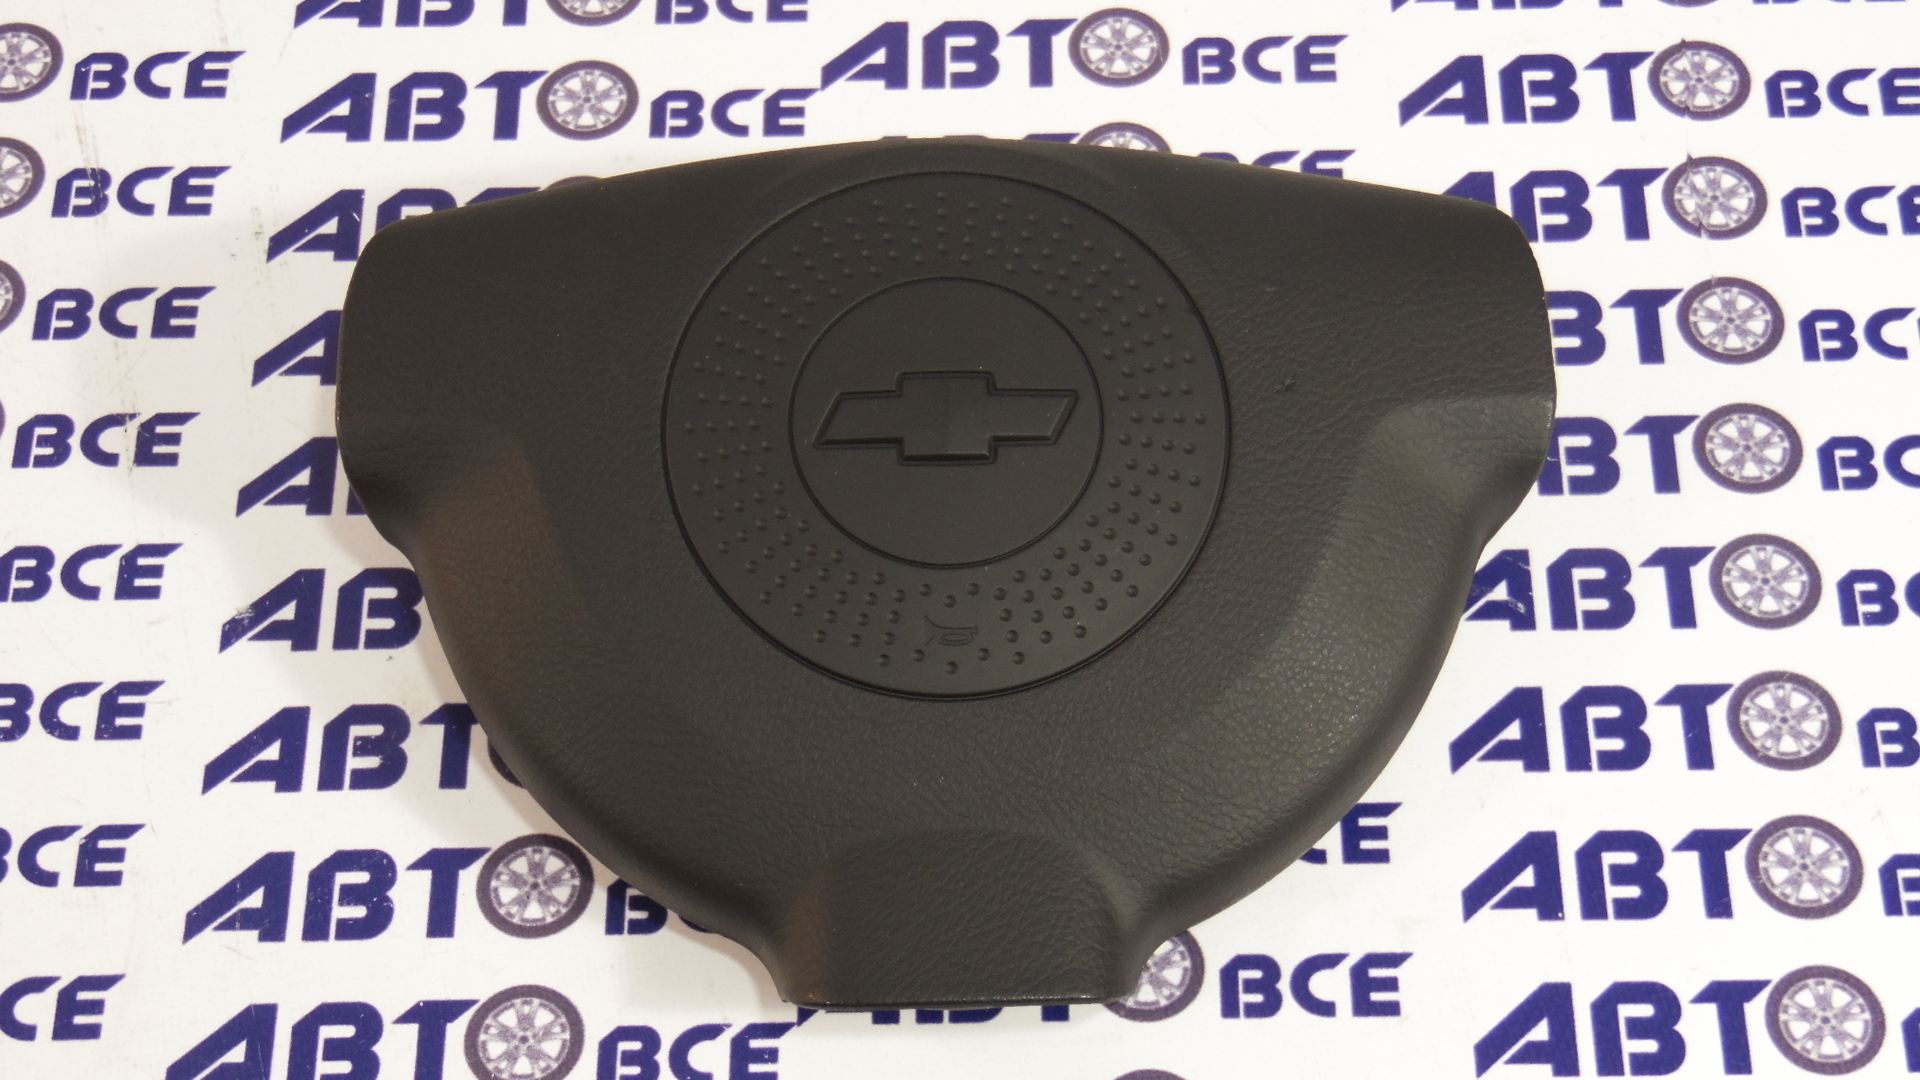 Крышка руля - кнопка сигнала - заглушка муляж Airbag (в руль) Aveo (на 3-х спицах. вместо airbag) GM